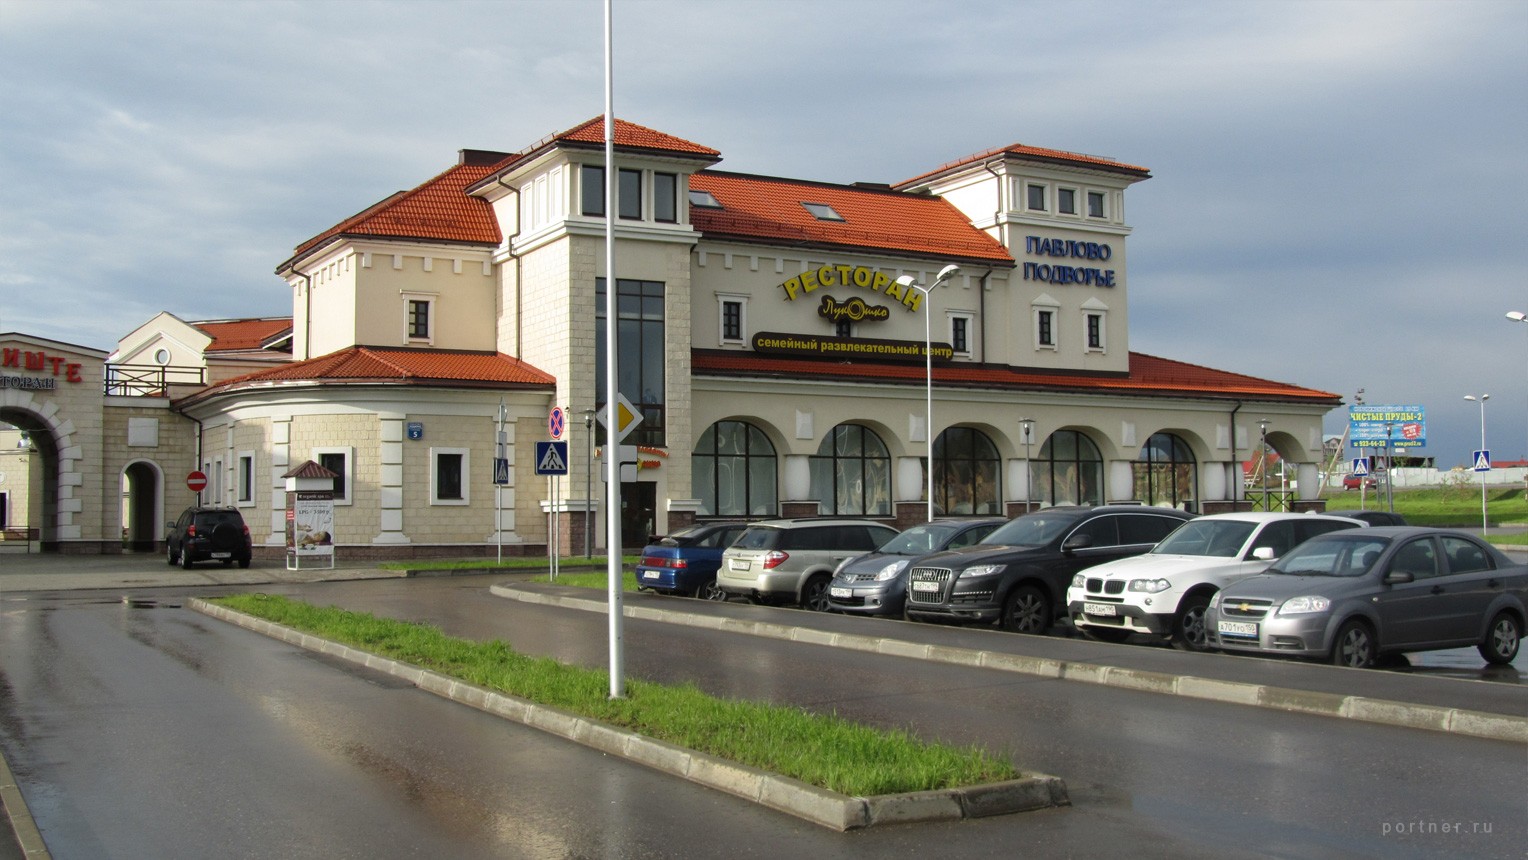 Shopping centre "Pavlovo Podvorye"